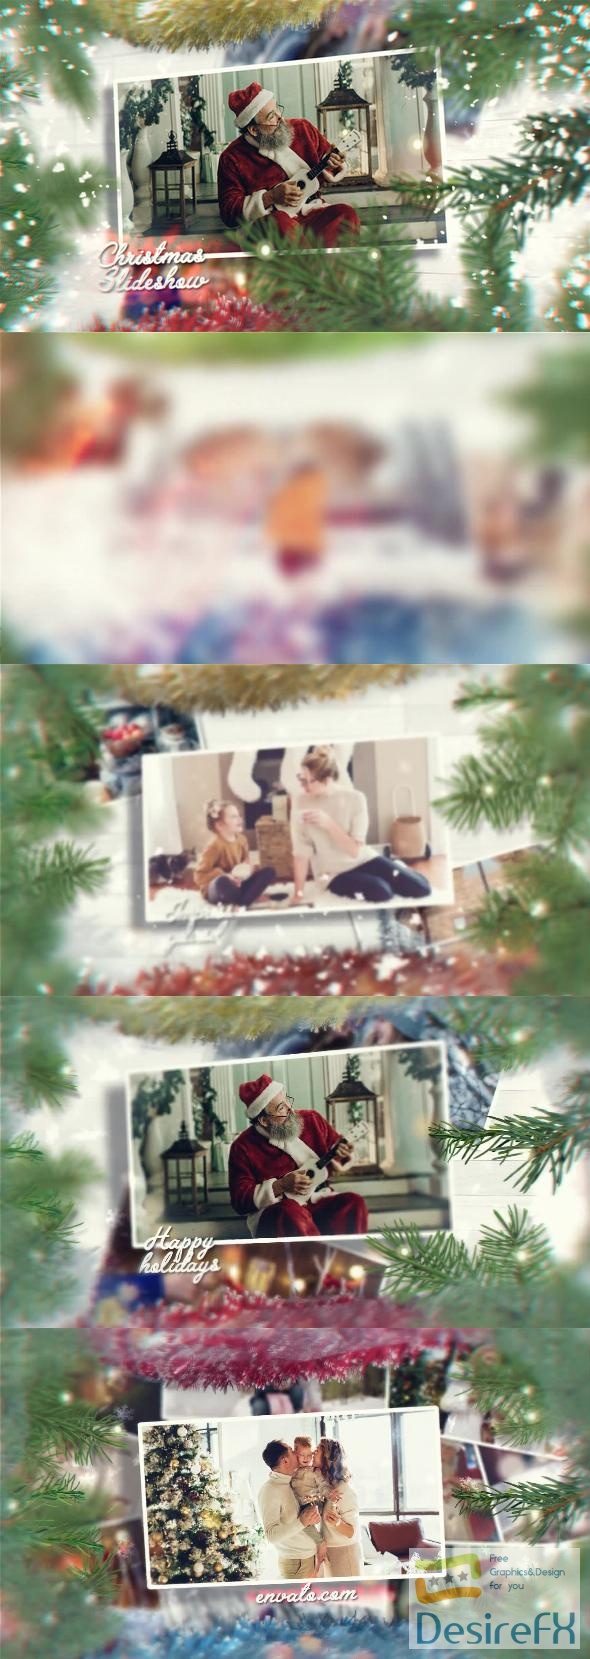 VideoHive Christmas Slideshow || 41921564